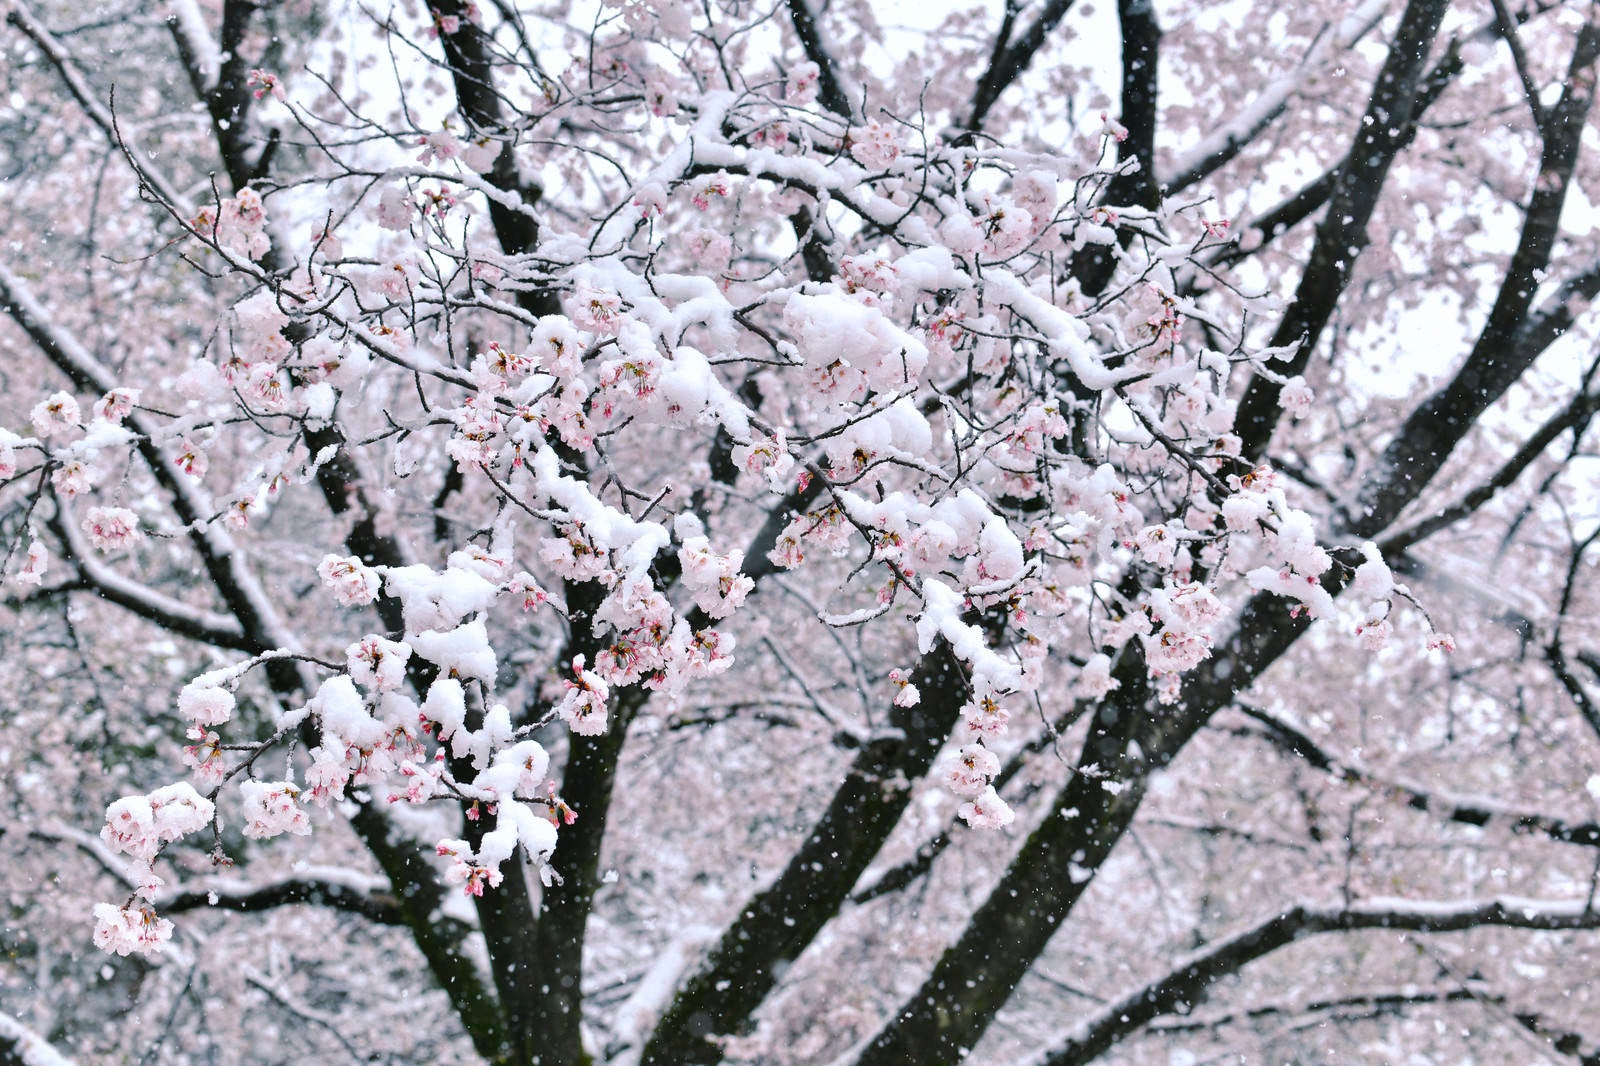 「雪が積もったソメイヨシノ」の写真